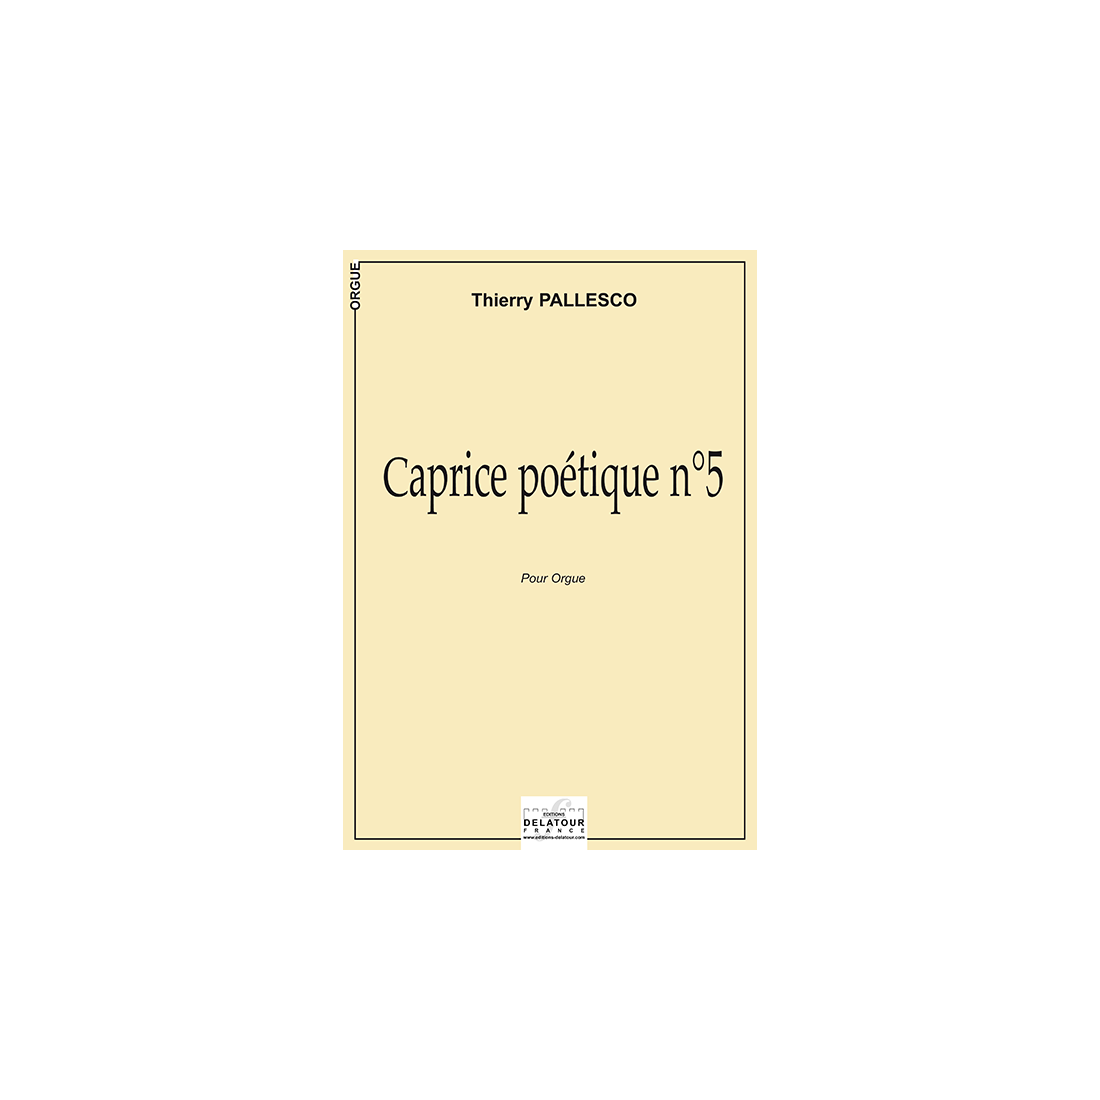 Caprice poétique n°5 für Orgel